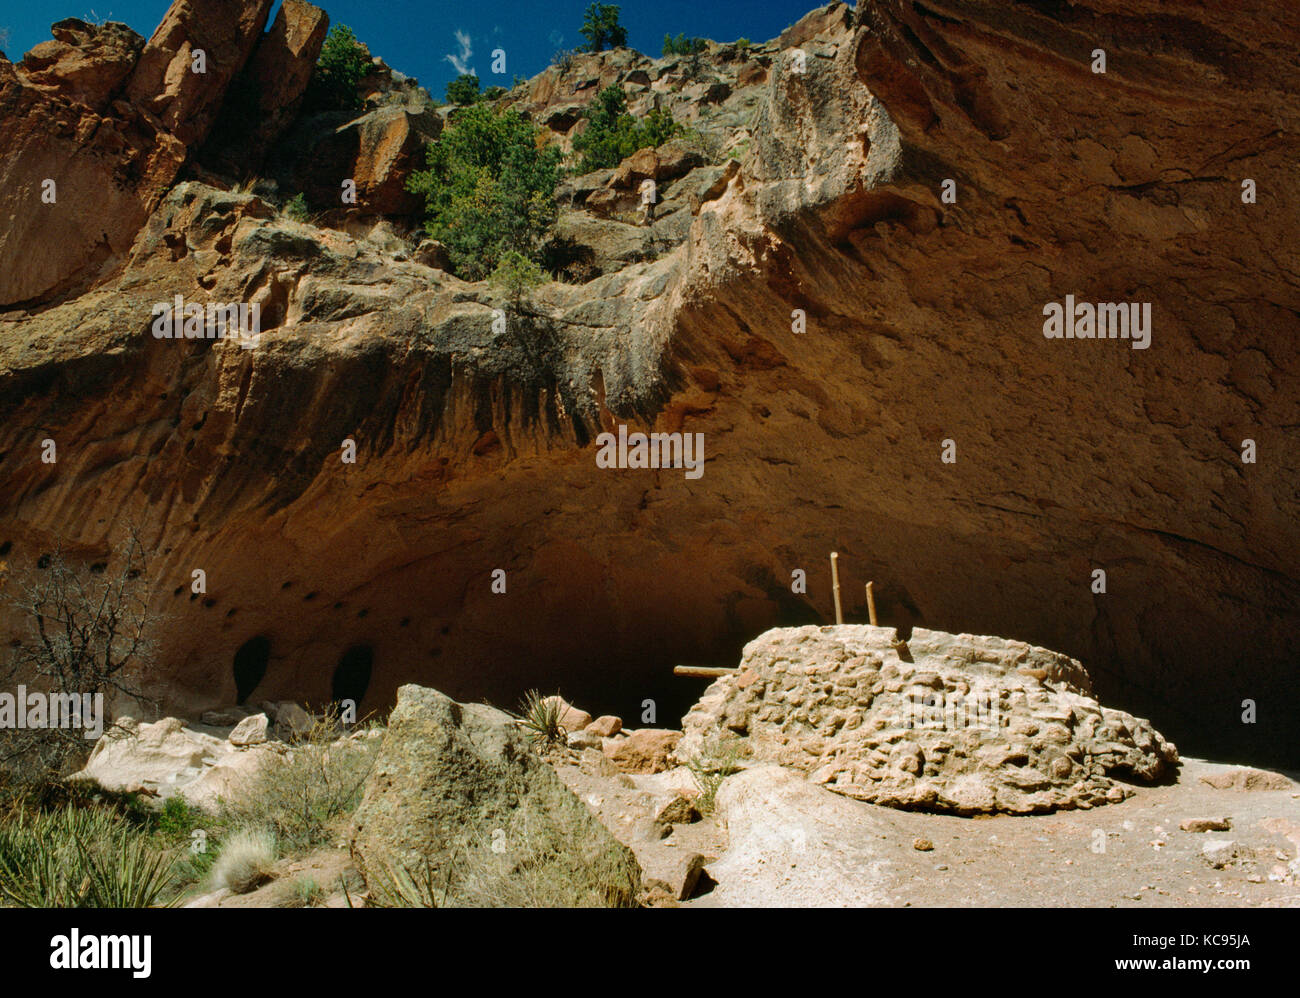 Bandelier National Monument, New Mexico, USA : Grotte de cérémonie dans les falaises de Frijoles Canyon, utilisé par les Indiens Anasazi qui vivait dans le canyon jusqu'à AD c1550 Banque D'Images